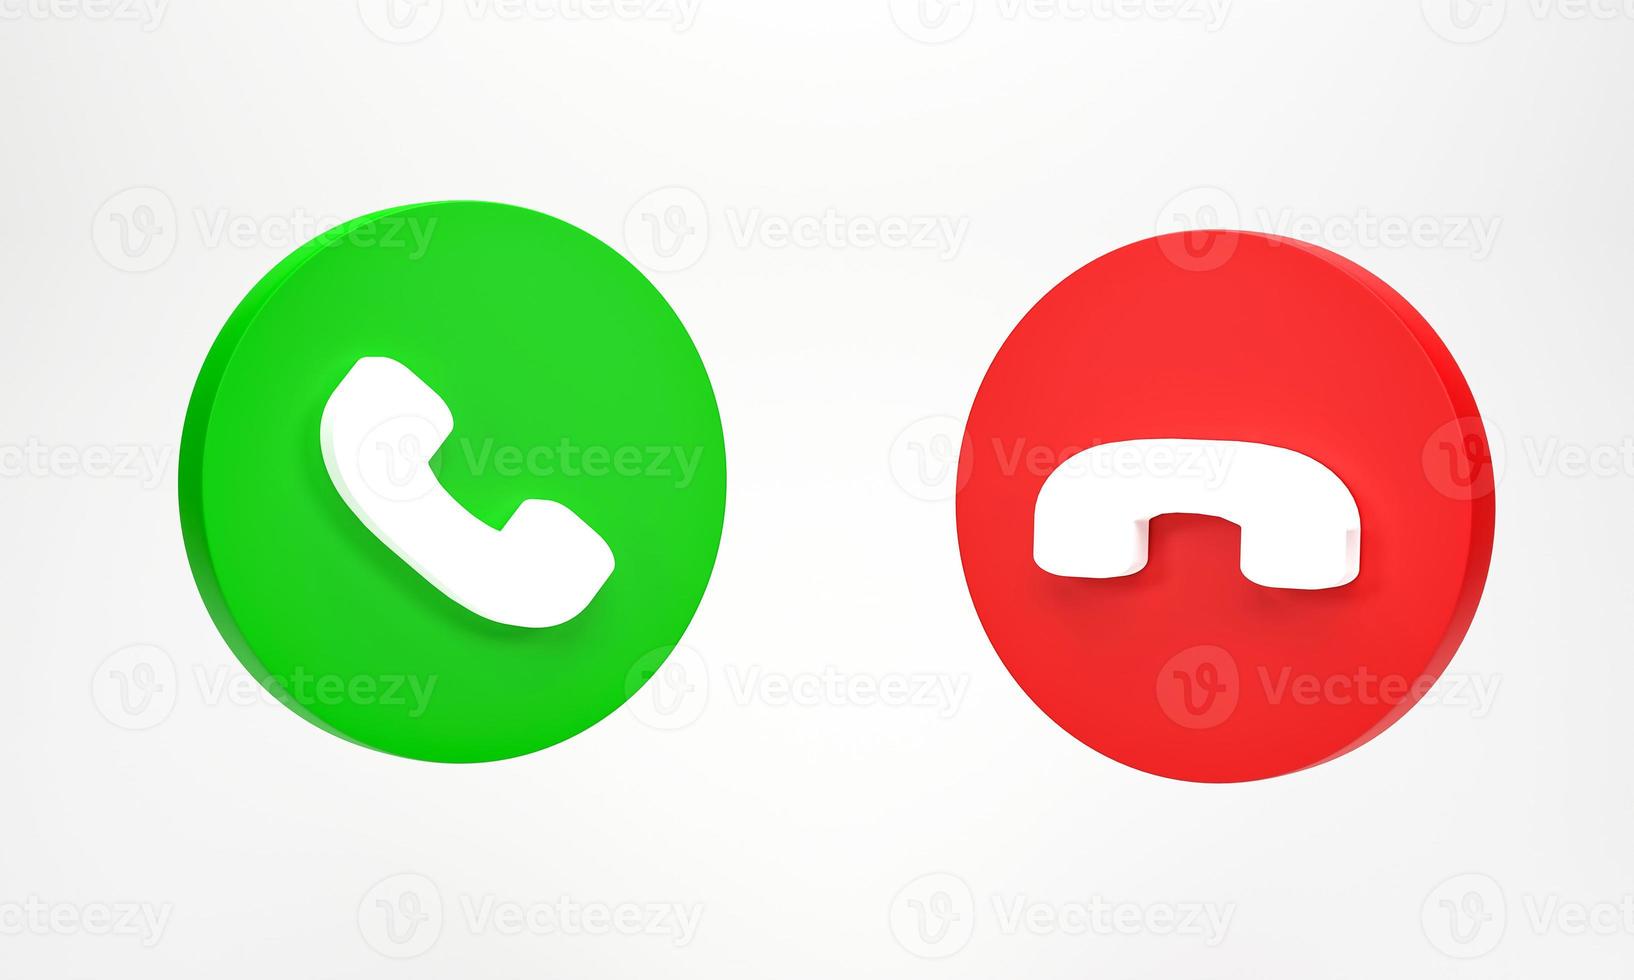 rendu 3d, illustration 3d. icône d'appel téléphonique isolé sur fond blanc. icônes de téléphone en vert accepter et rouge rejeter l'appel entrant photo